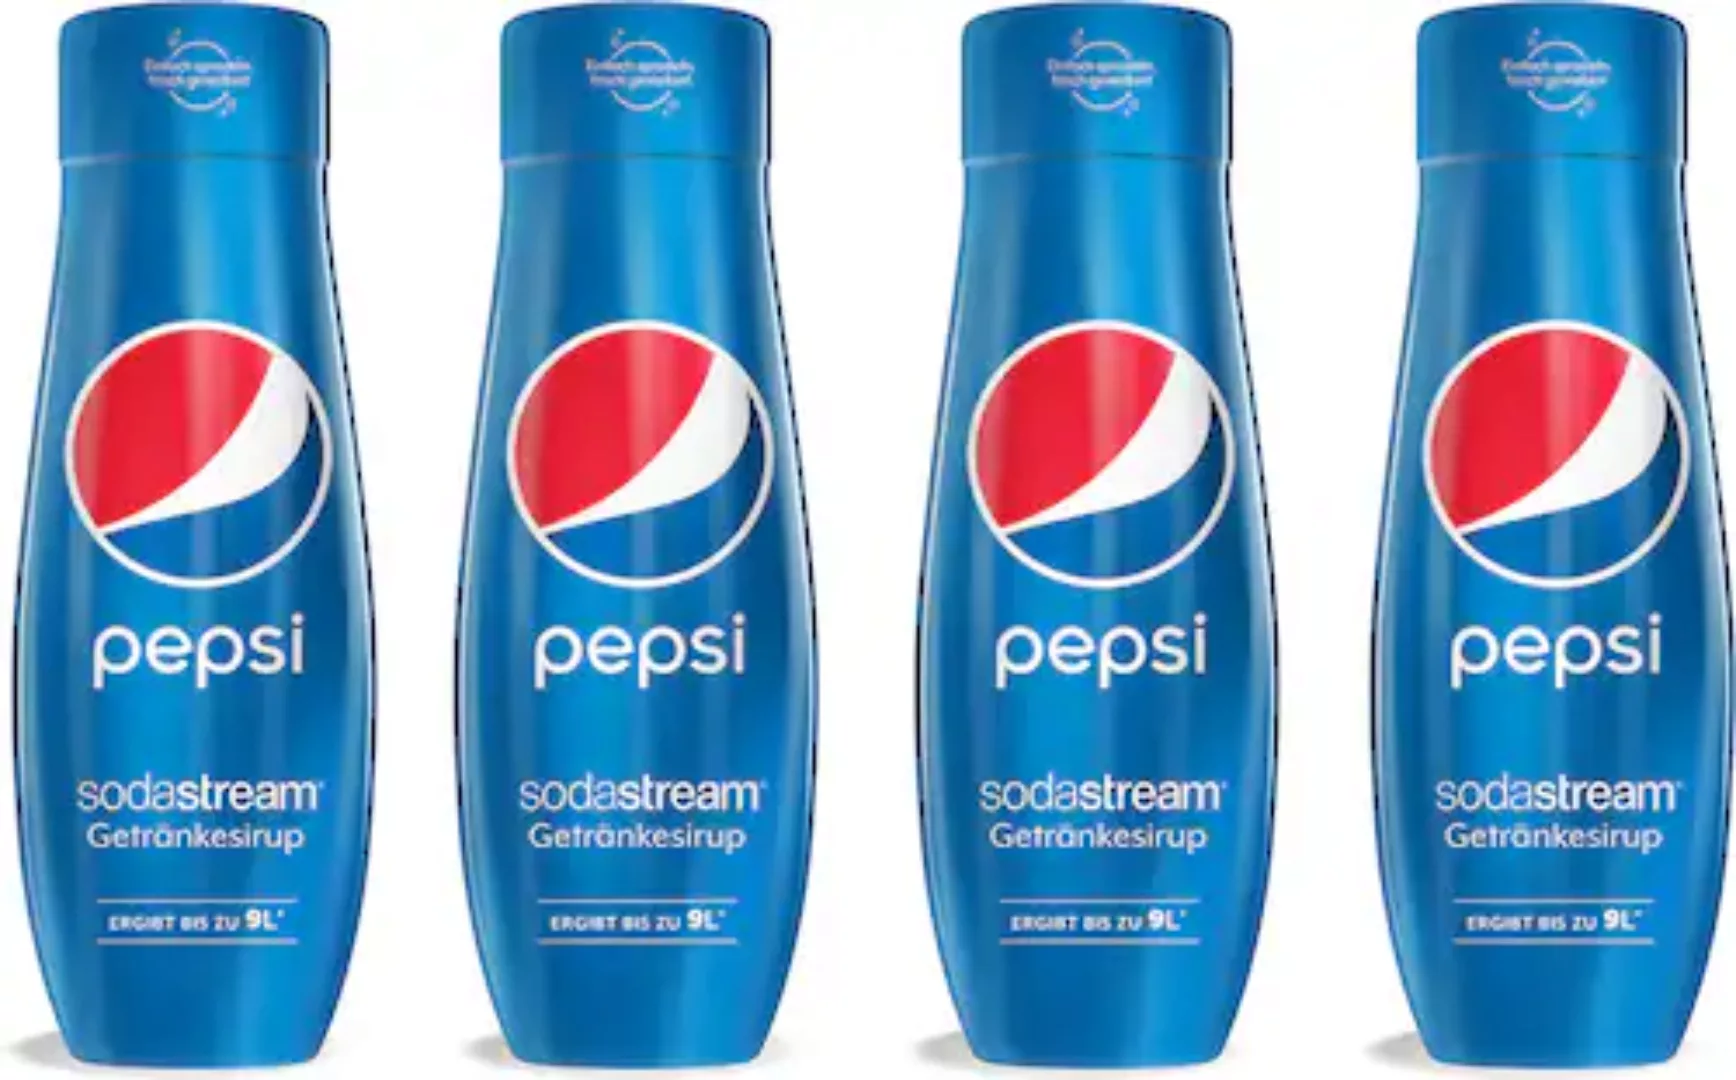 SodaStream Getränke-Sirup, Pepsi Cola, (4 Flaschen), für bis zu 9 Liter Fer günstig online kaufen